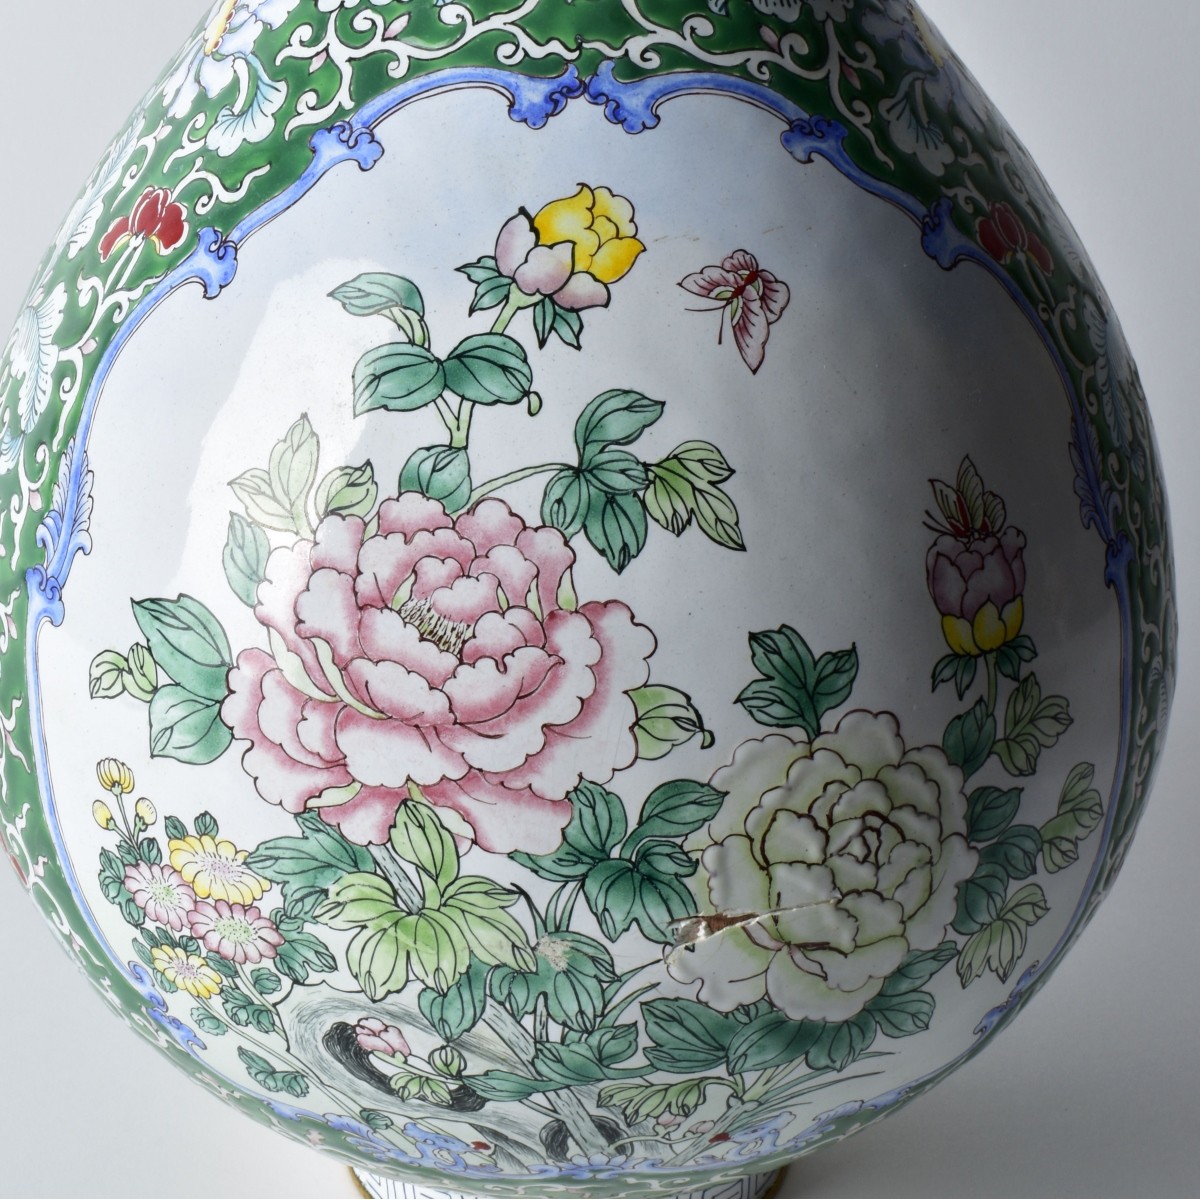 Large Chinese Enamel Vase